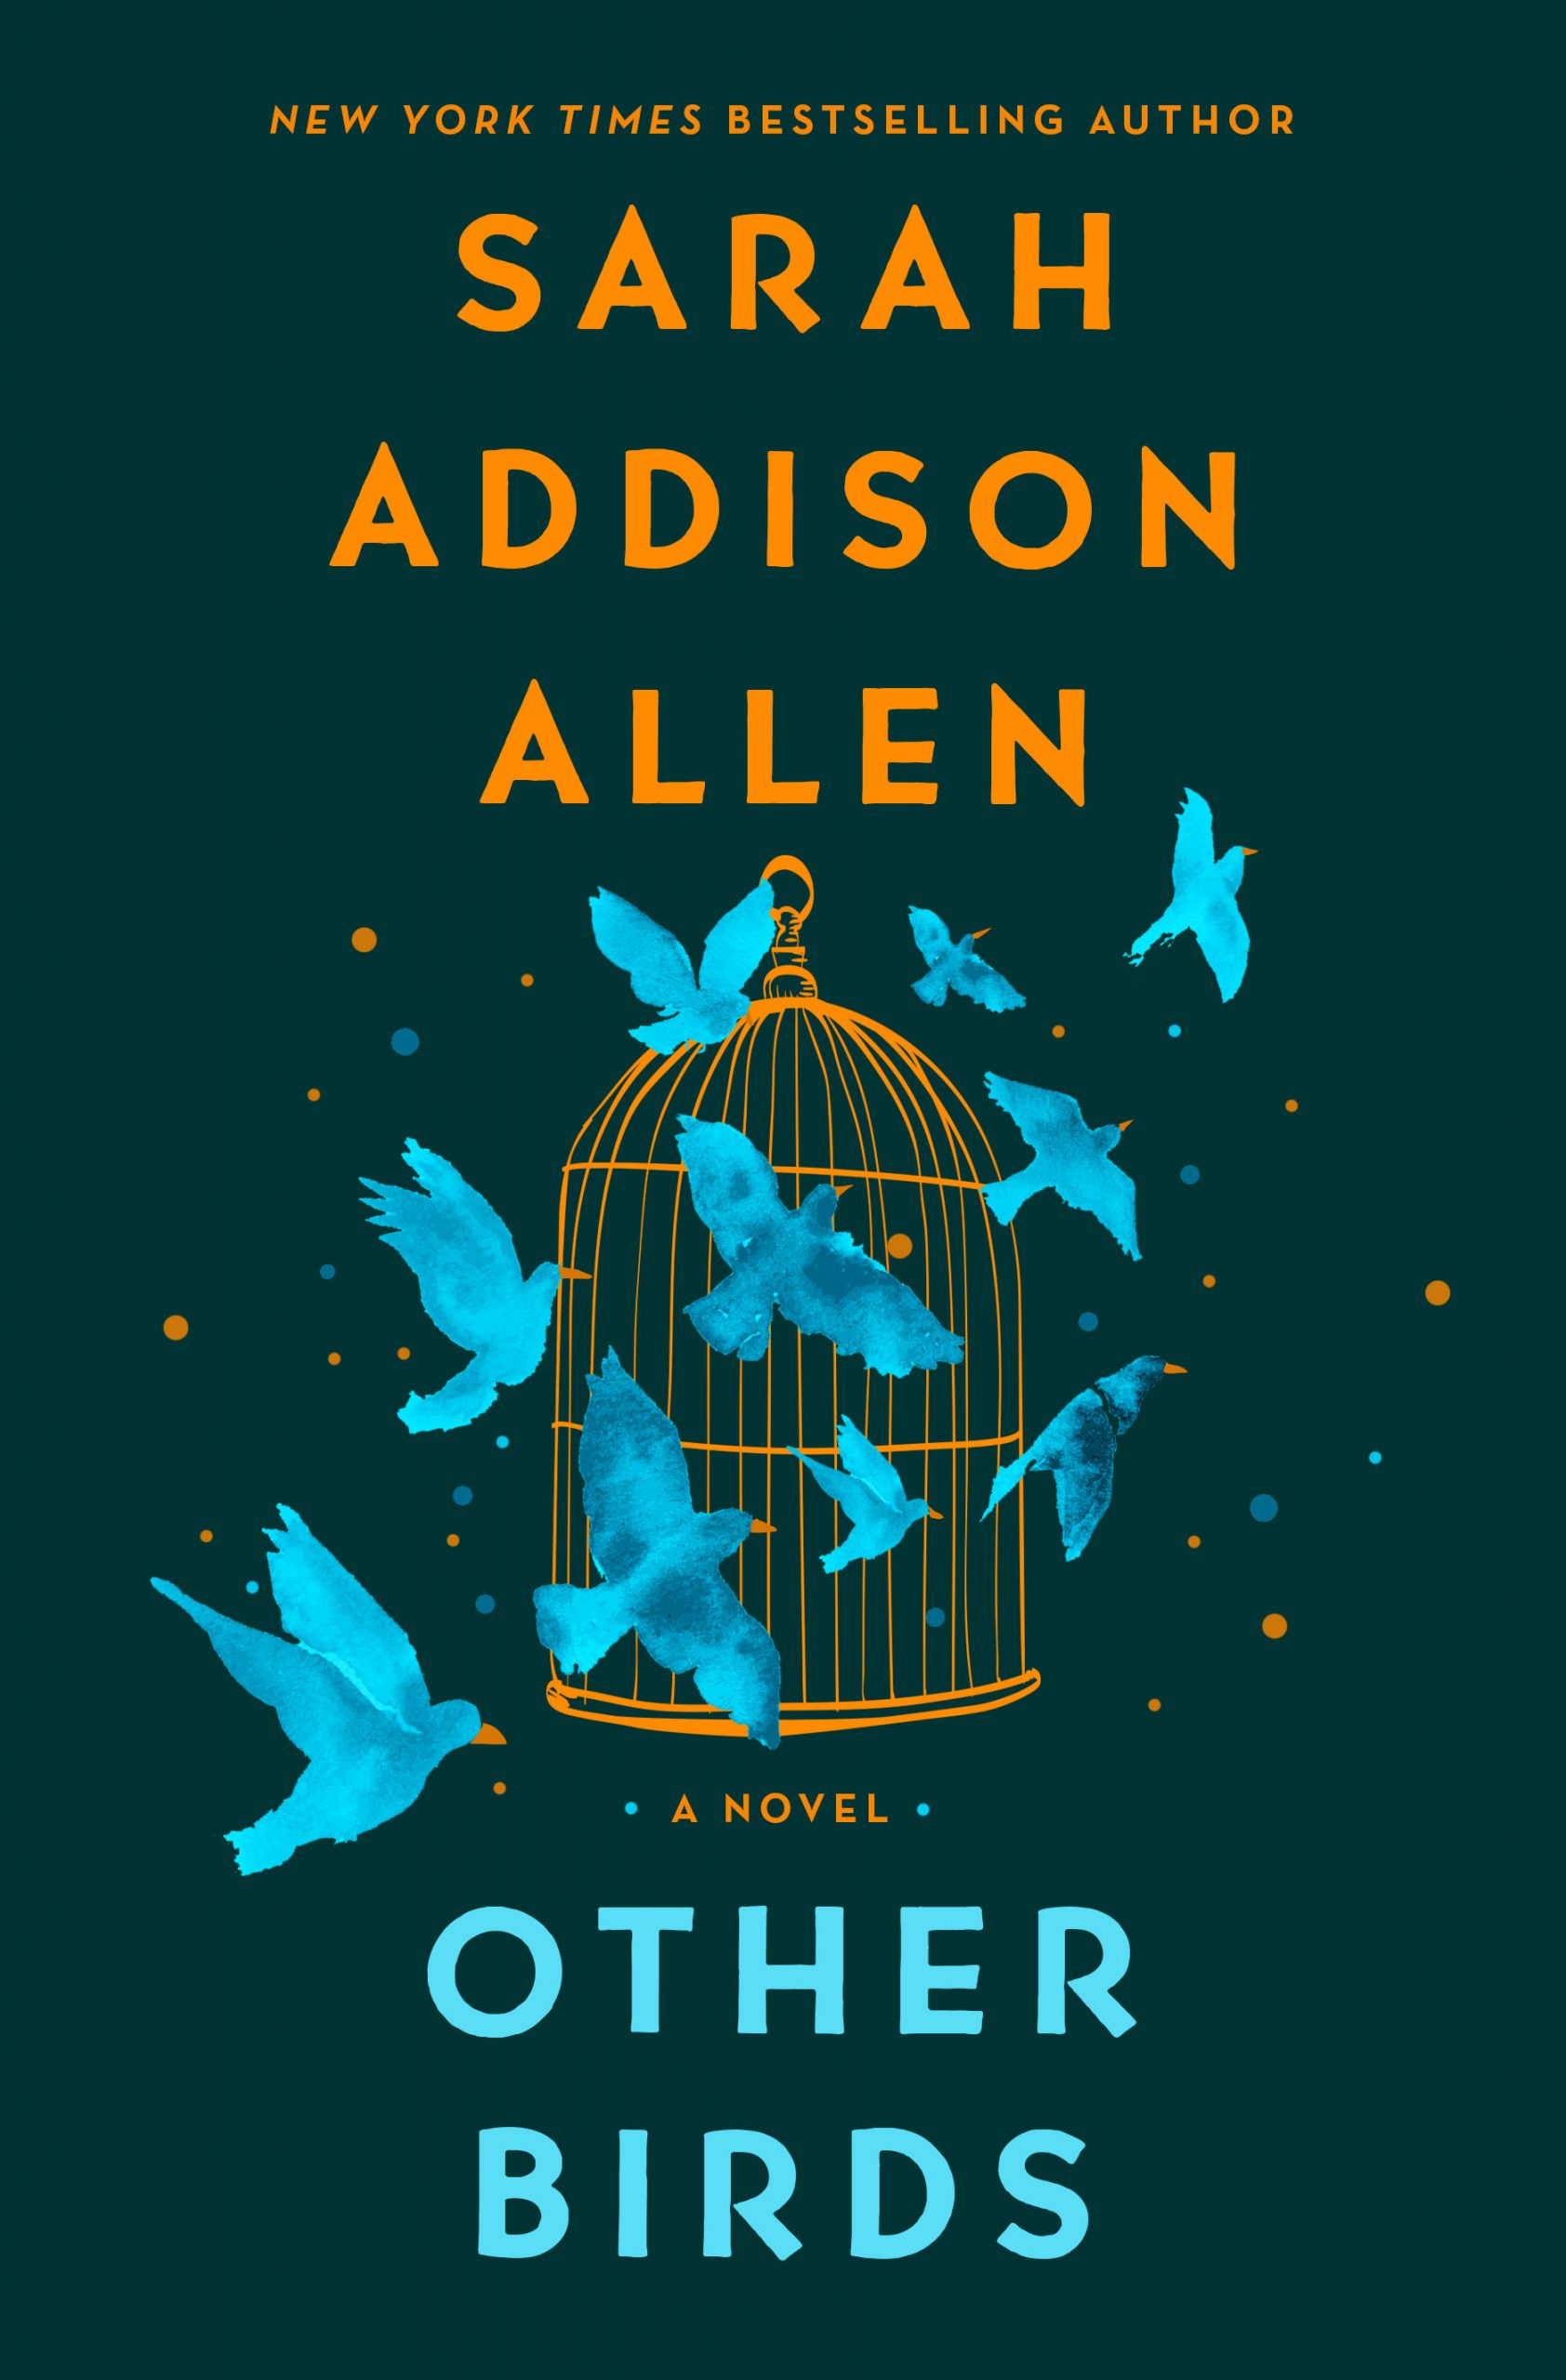 Other Birds by Sarah Addison Allen